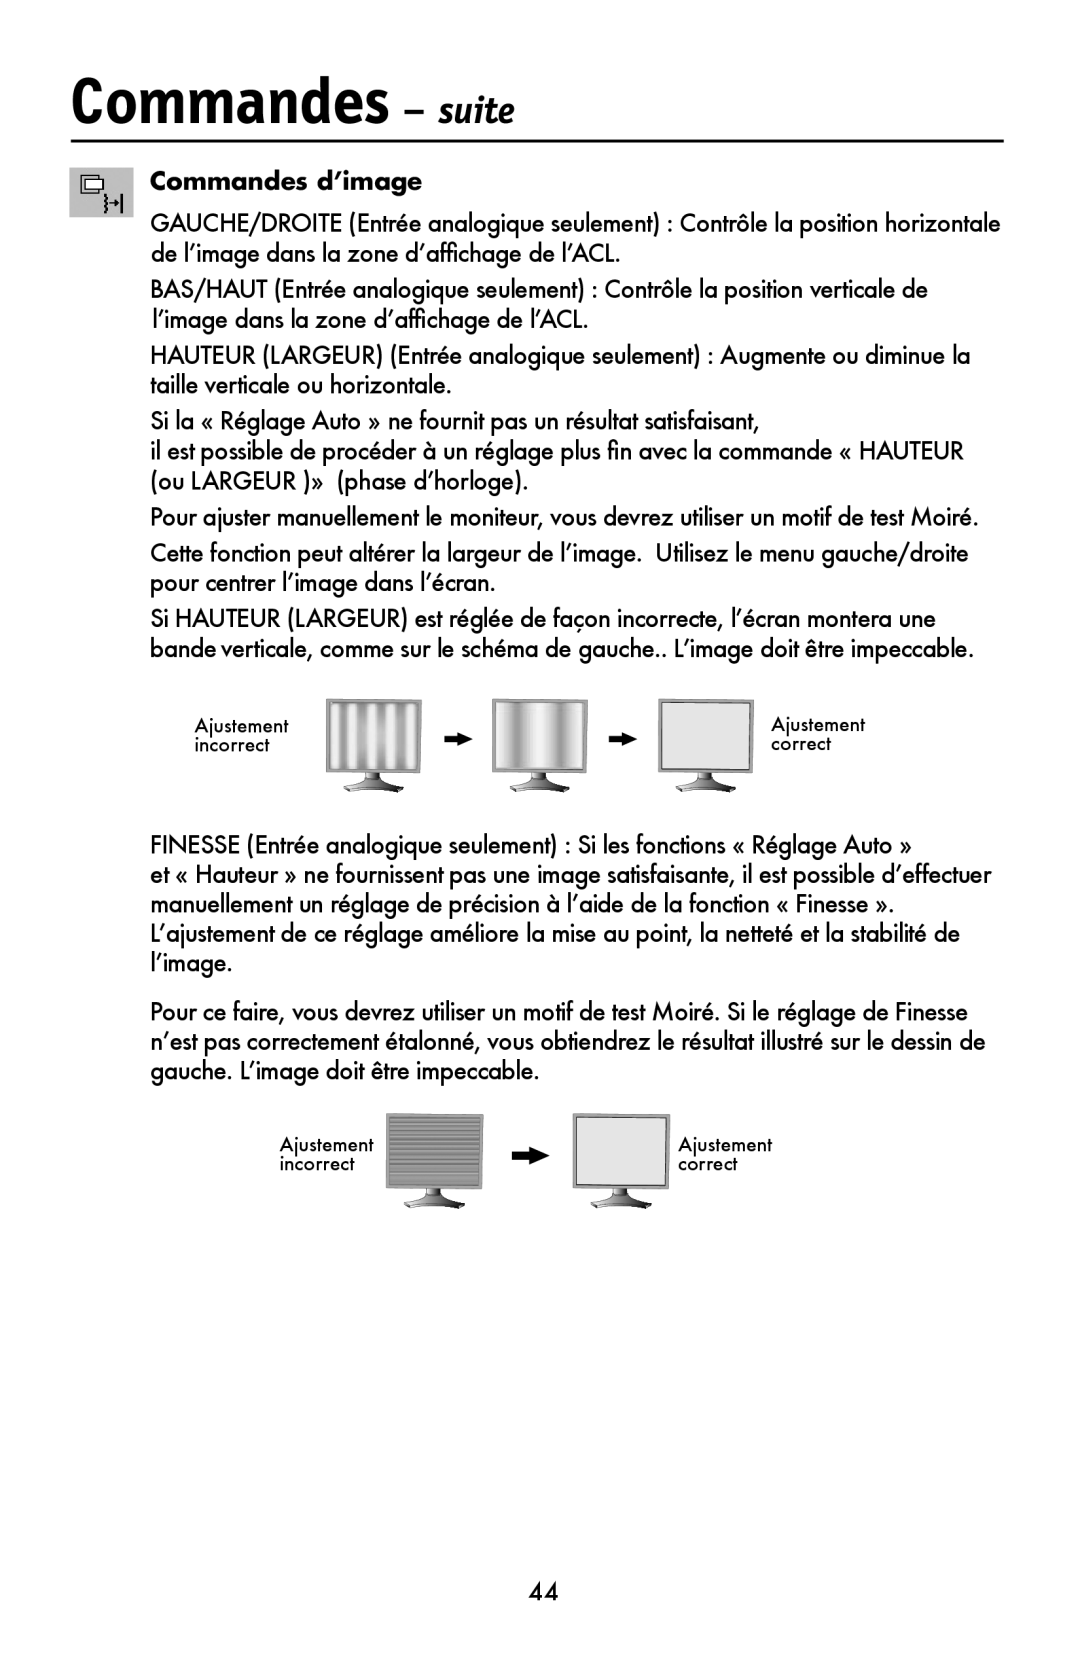 NEC LCD1990FXTM user manual Commandes - suite, Commandes d’image 